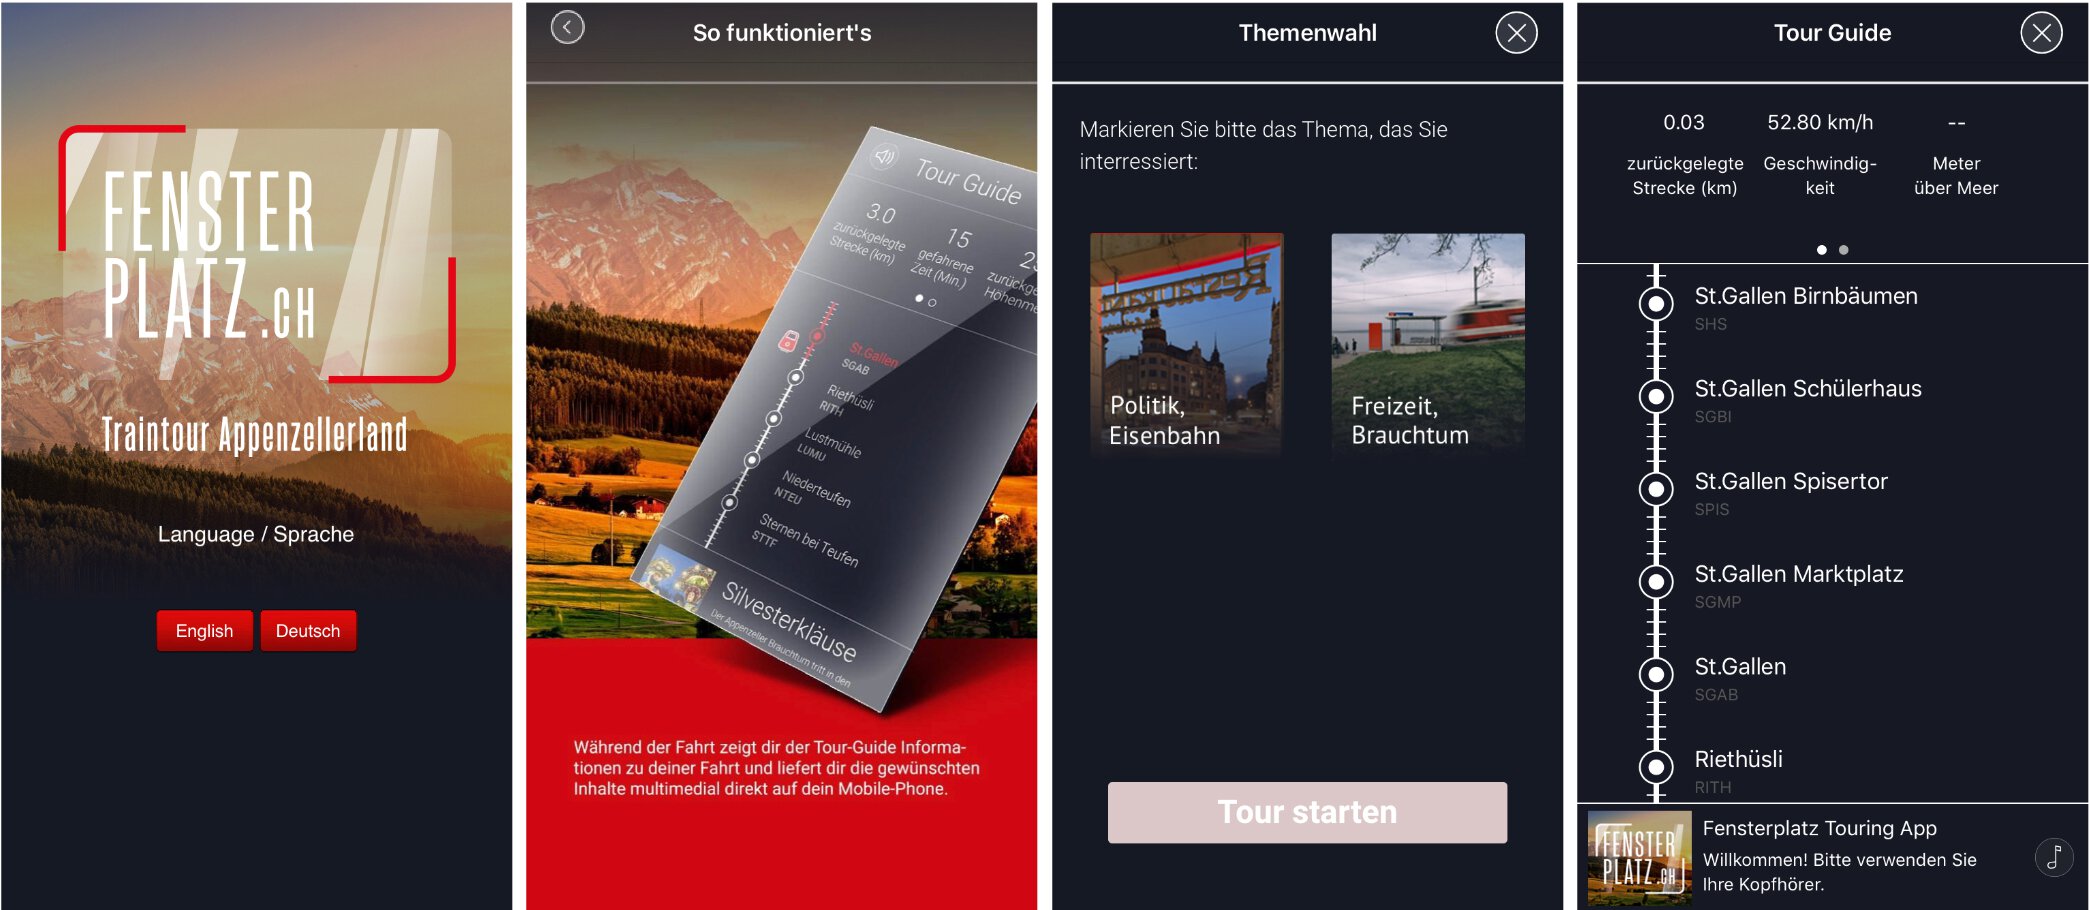 Fensterplatz die Audioguide App der Appenzeller Bahn